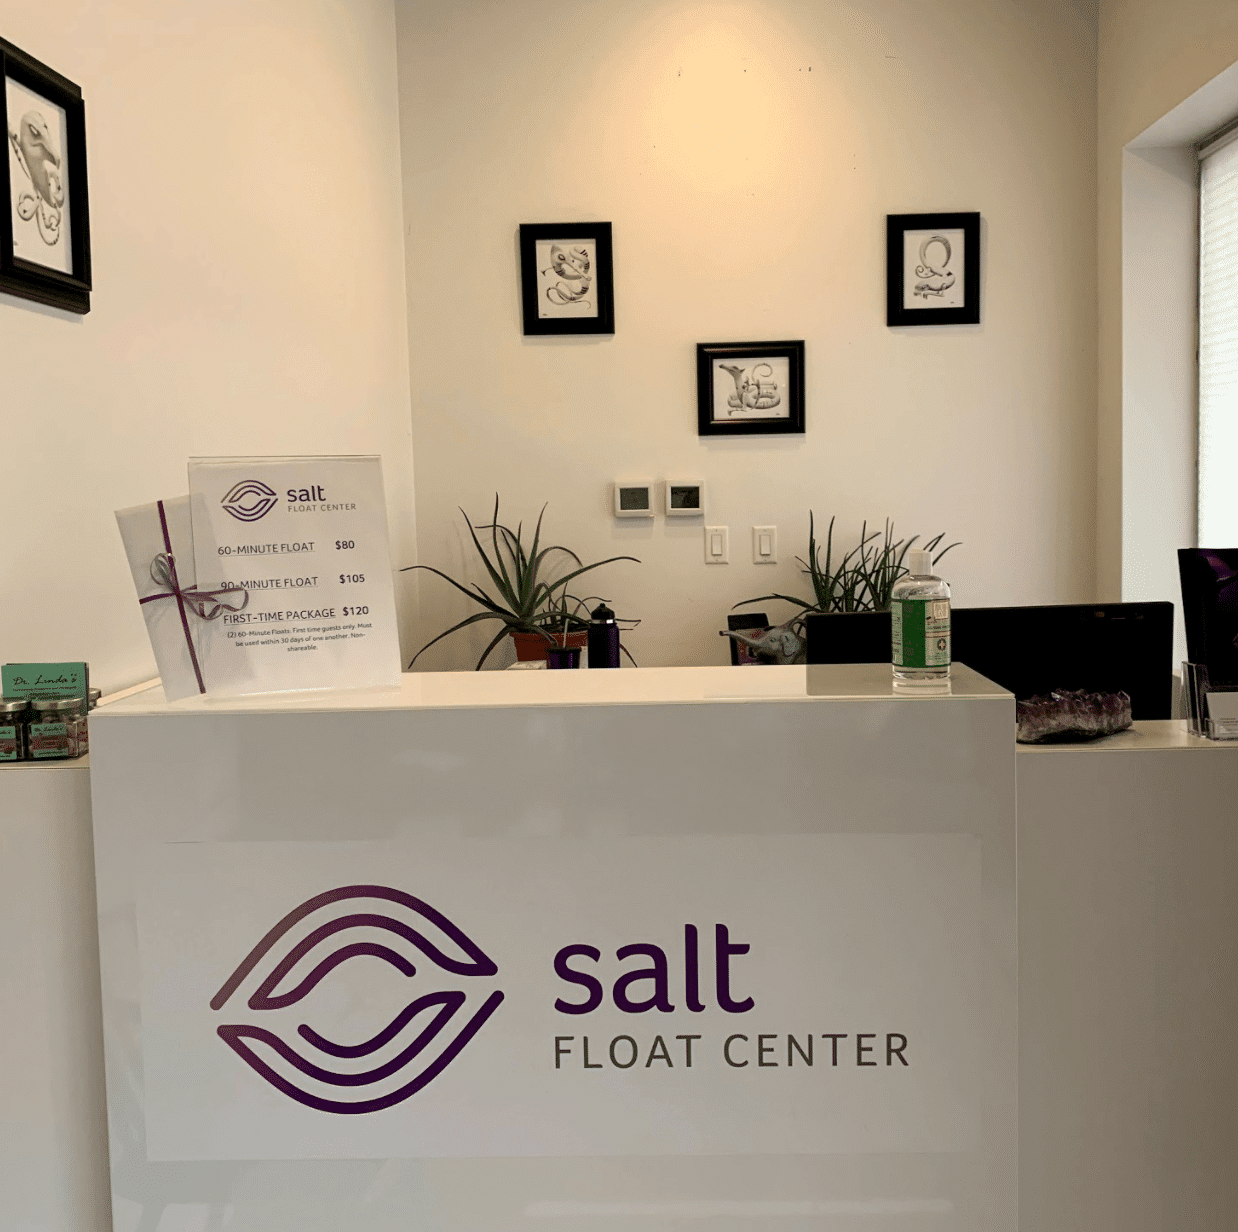 Salt Float Center